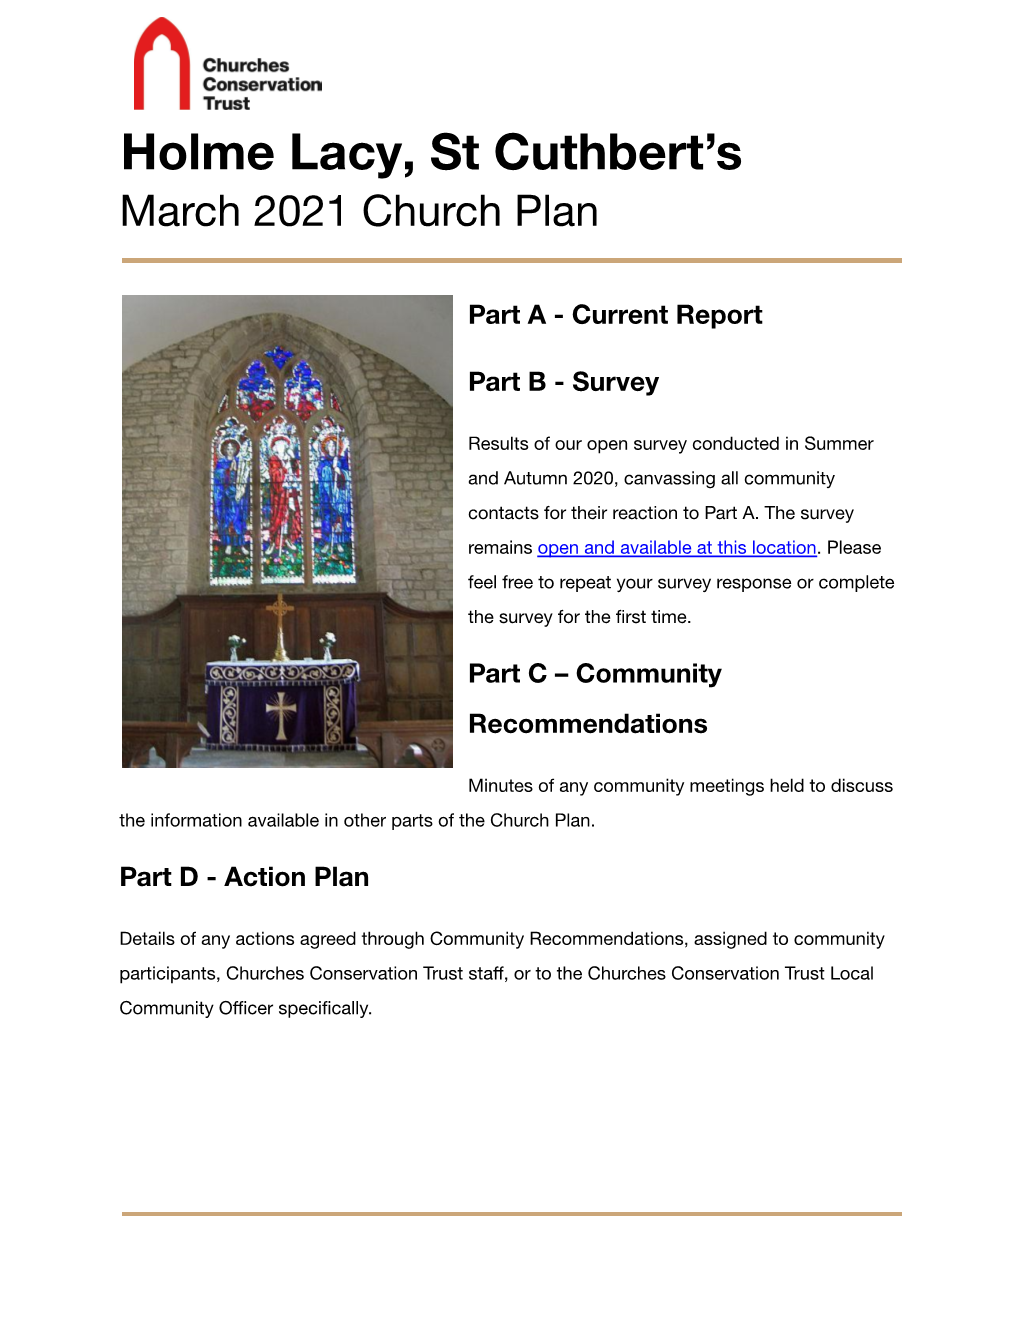 Holme Lacy Church Plan March 2021.Pdf